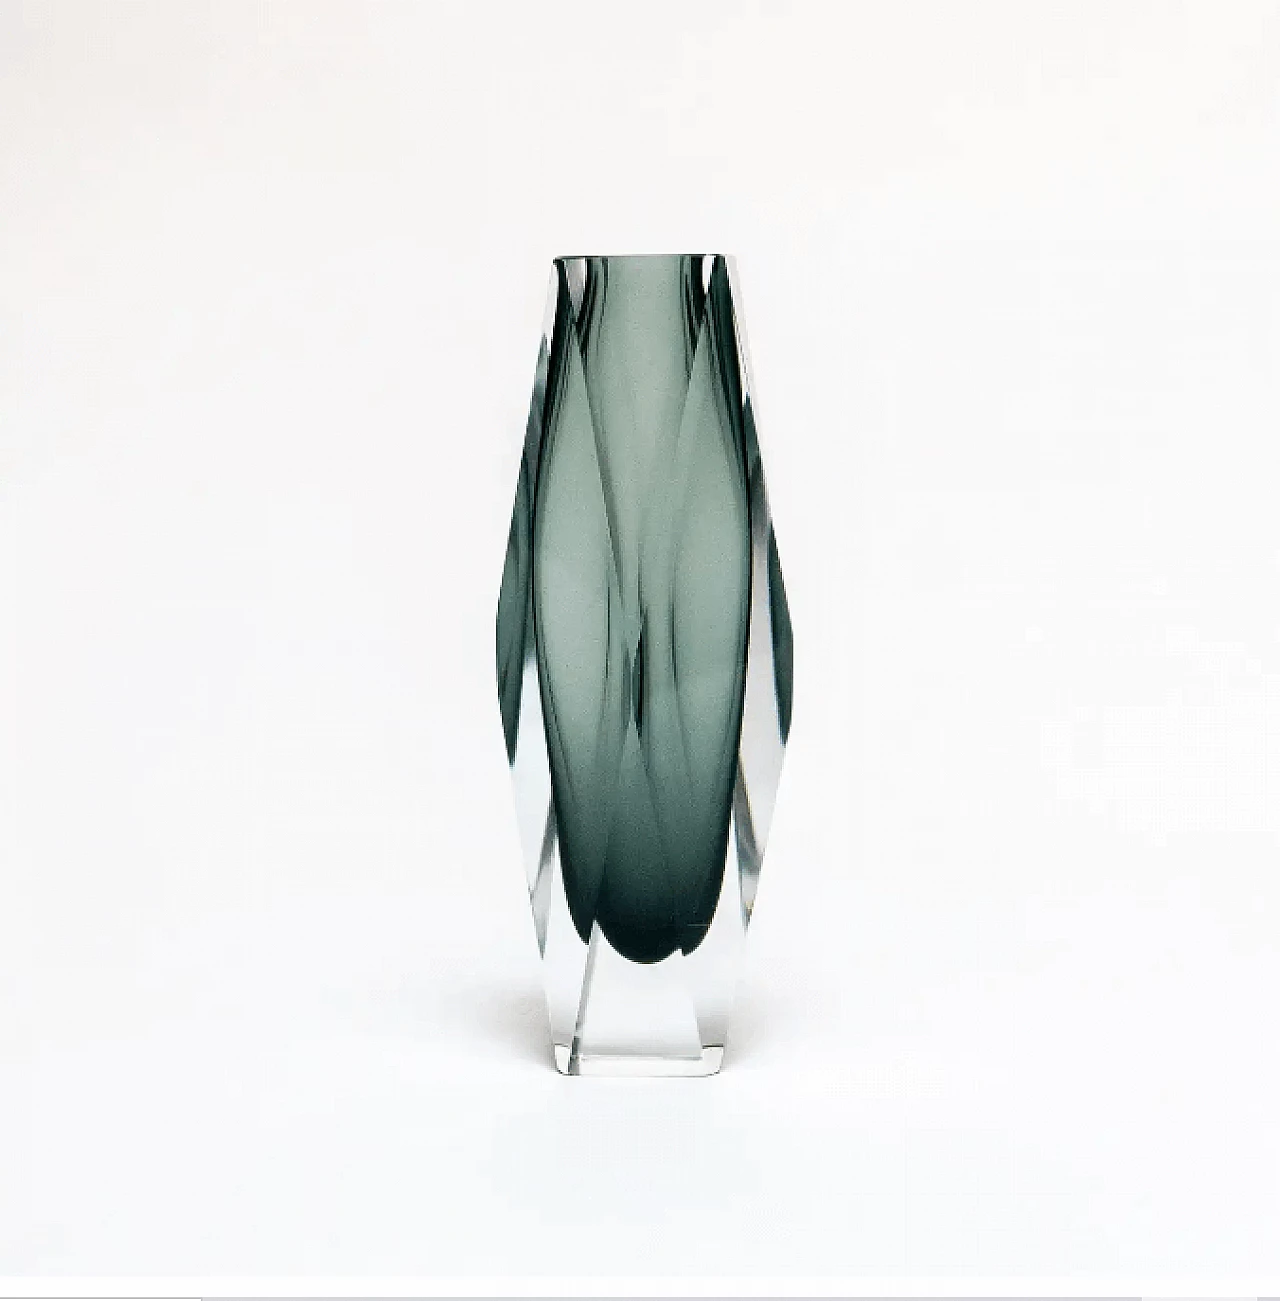 Geometric vase in Murano glass, 1960s 2